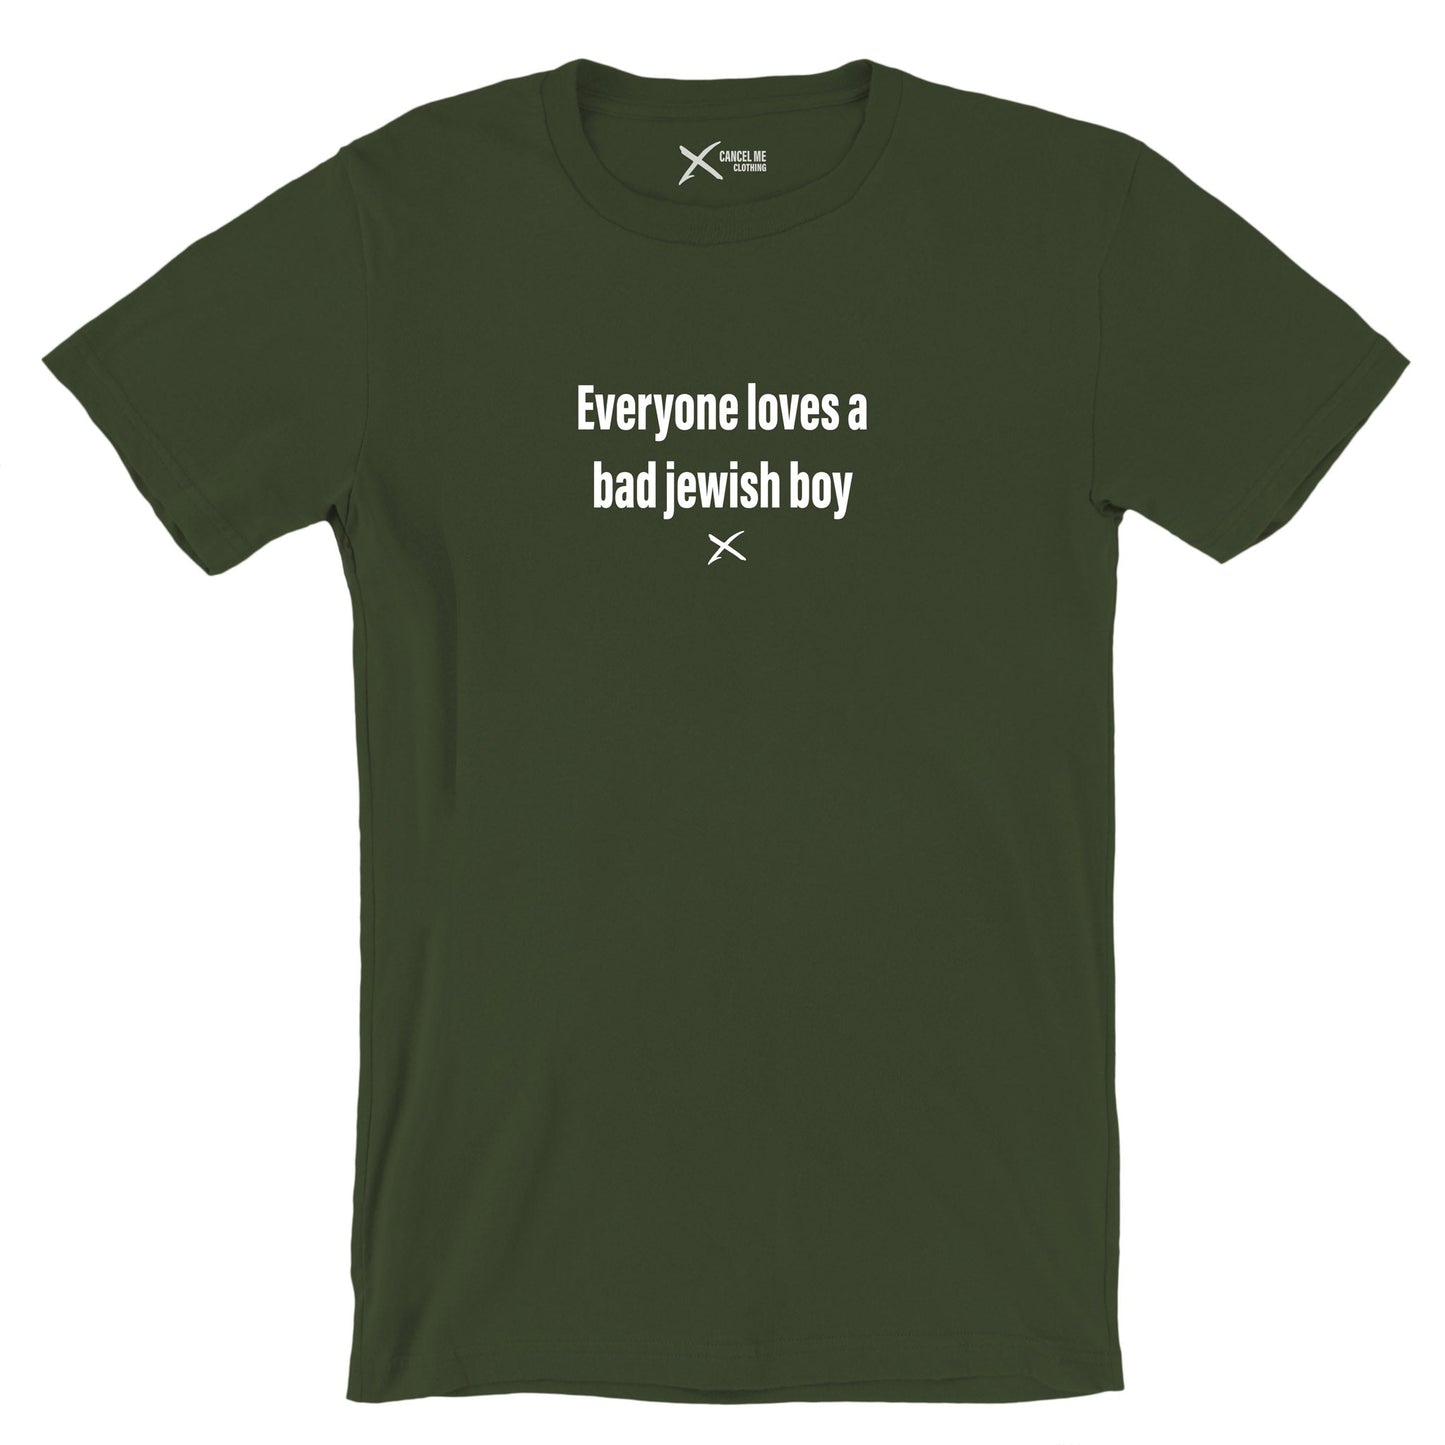 Everyone loves a bad jewish boy - Shirt